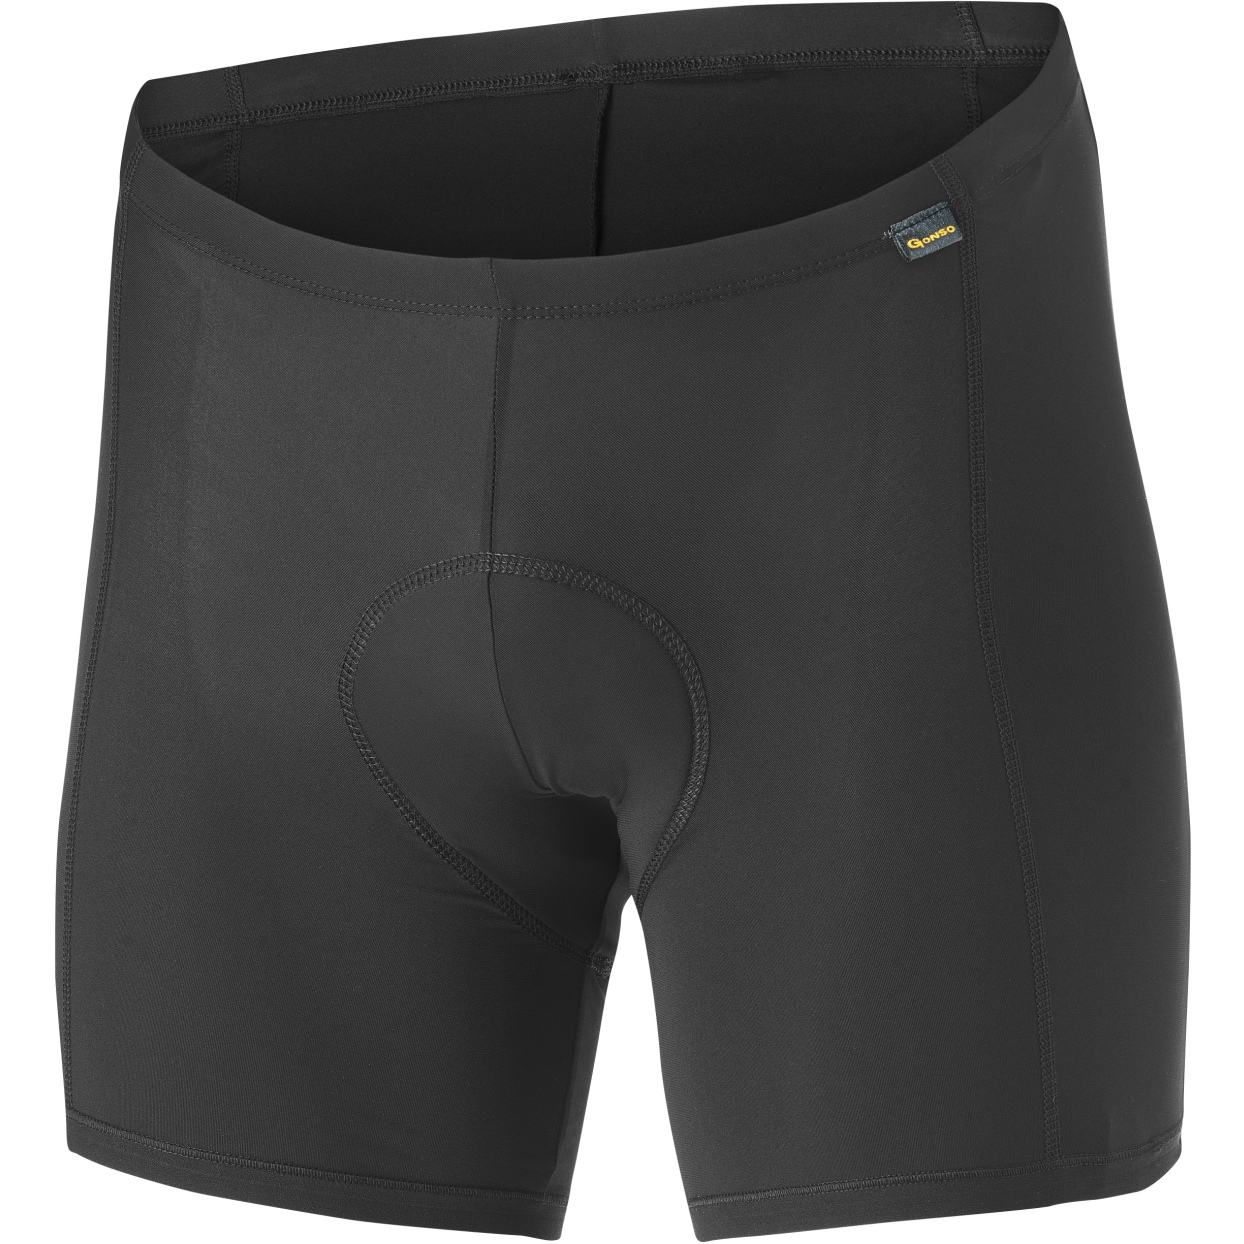 Image of Gonso Base Bike Underpants Men - Black